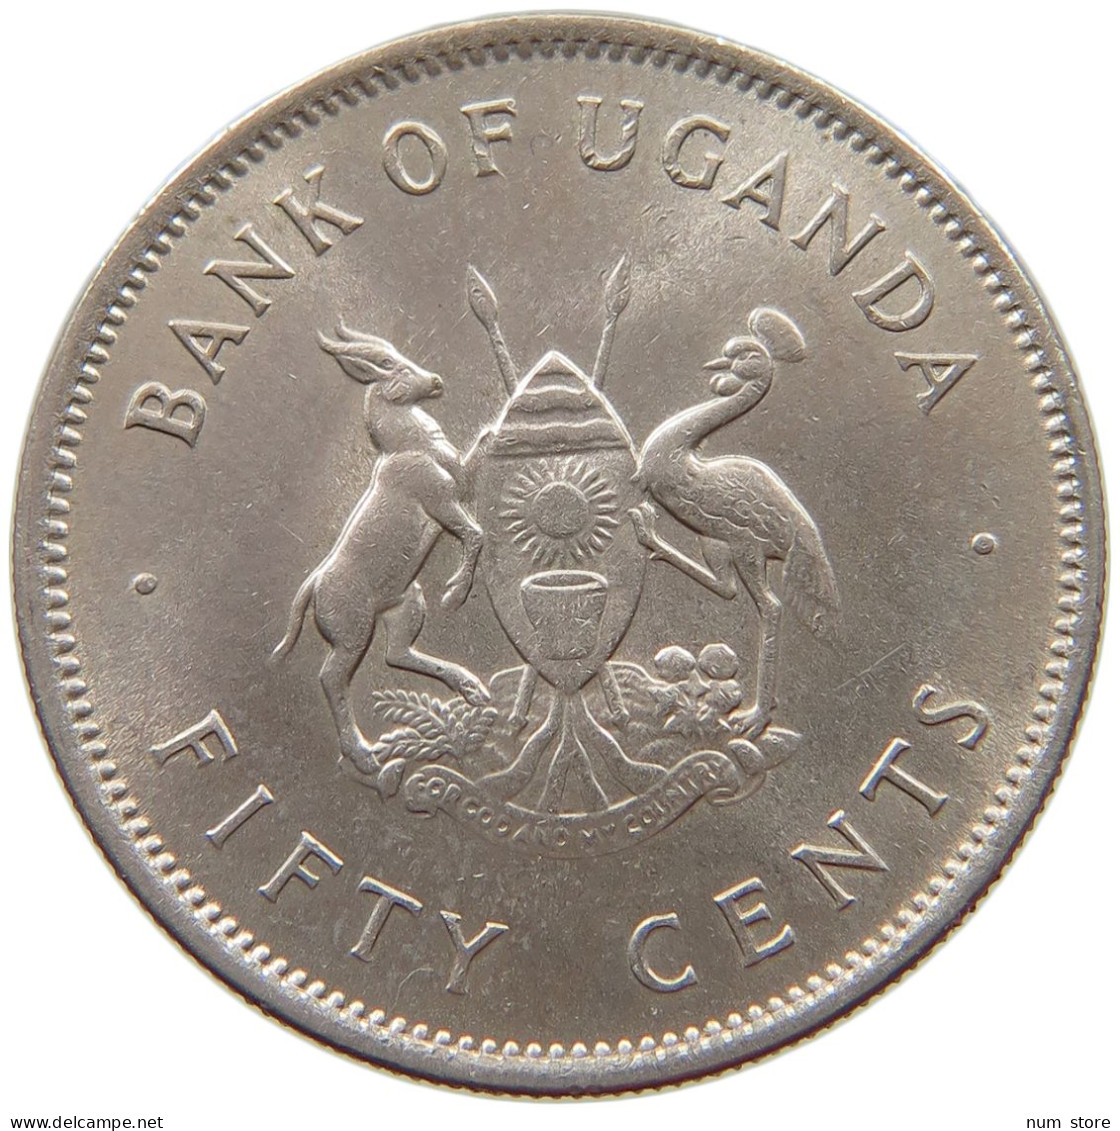 UGANDA 50 CENTS 1966  #s040 0233 - Ouganda